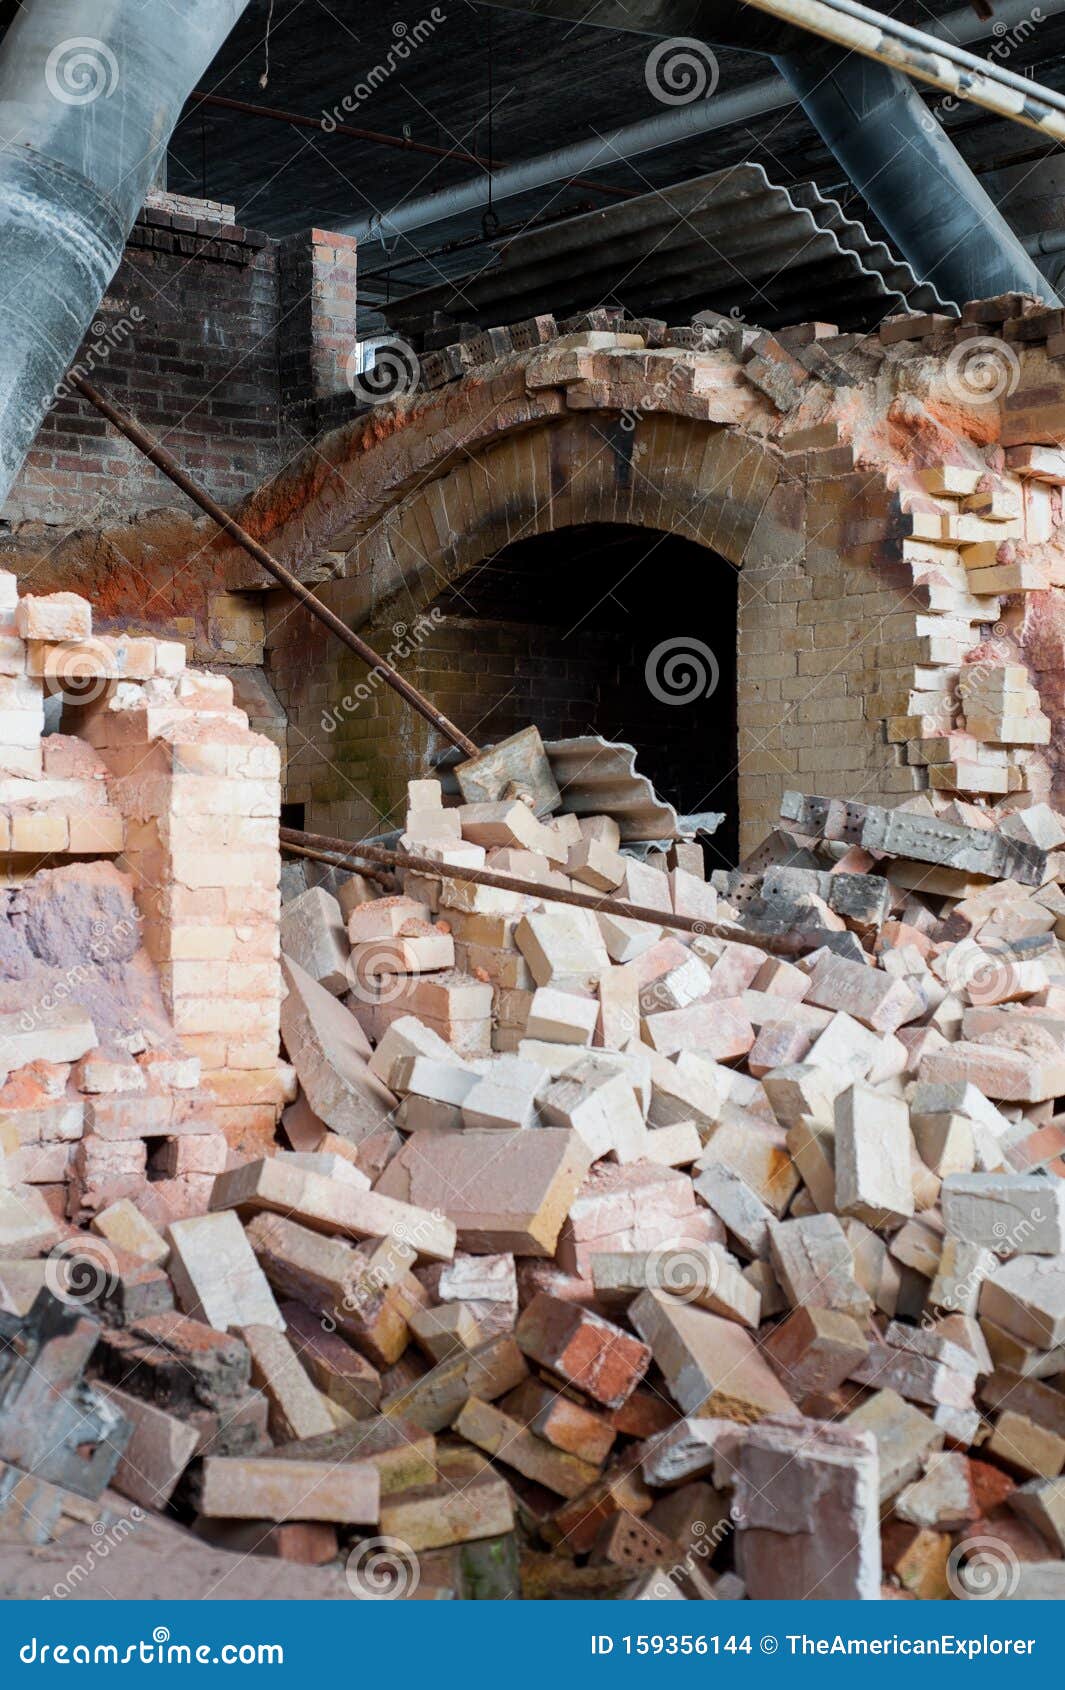 Unfinished Pottery Molds - Abandoned Shenango Pottery Factory